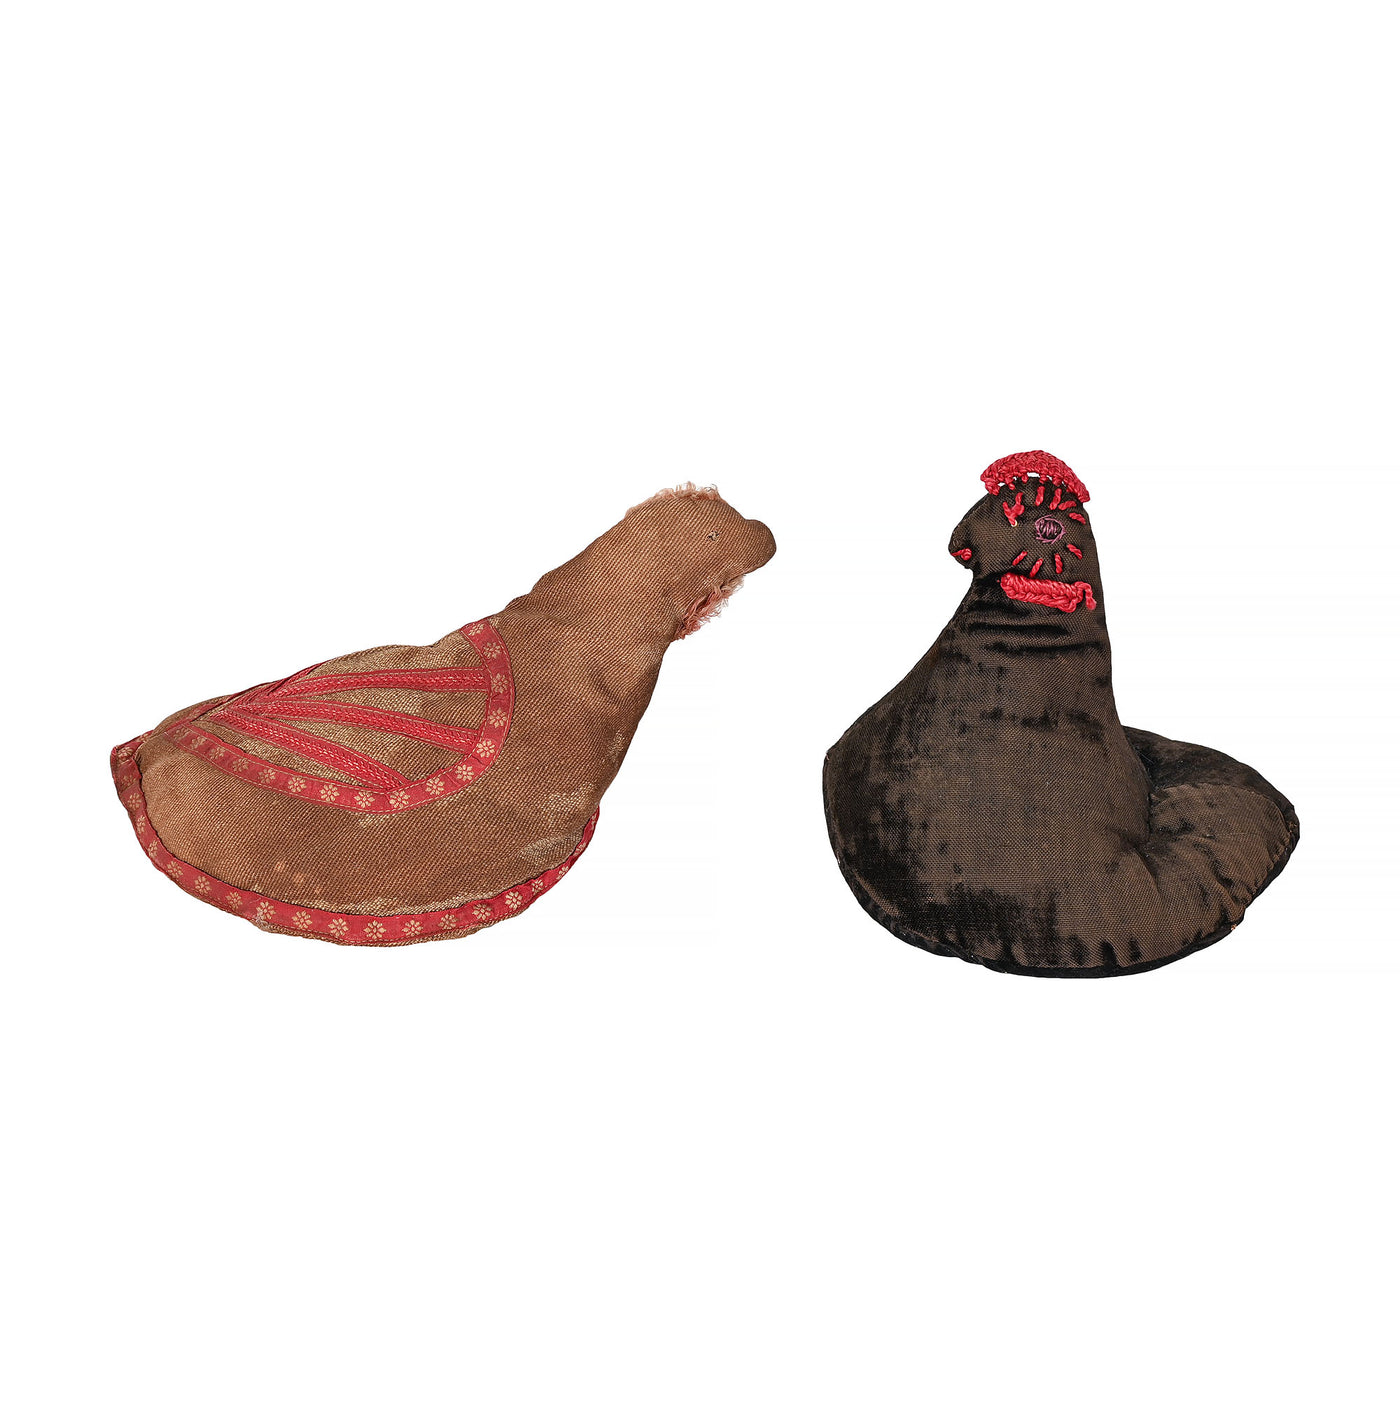 Mennonite Handmade Chickens